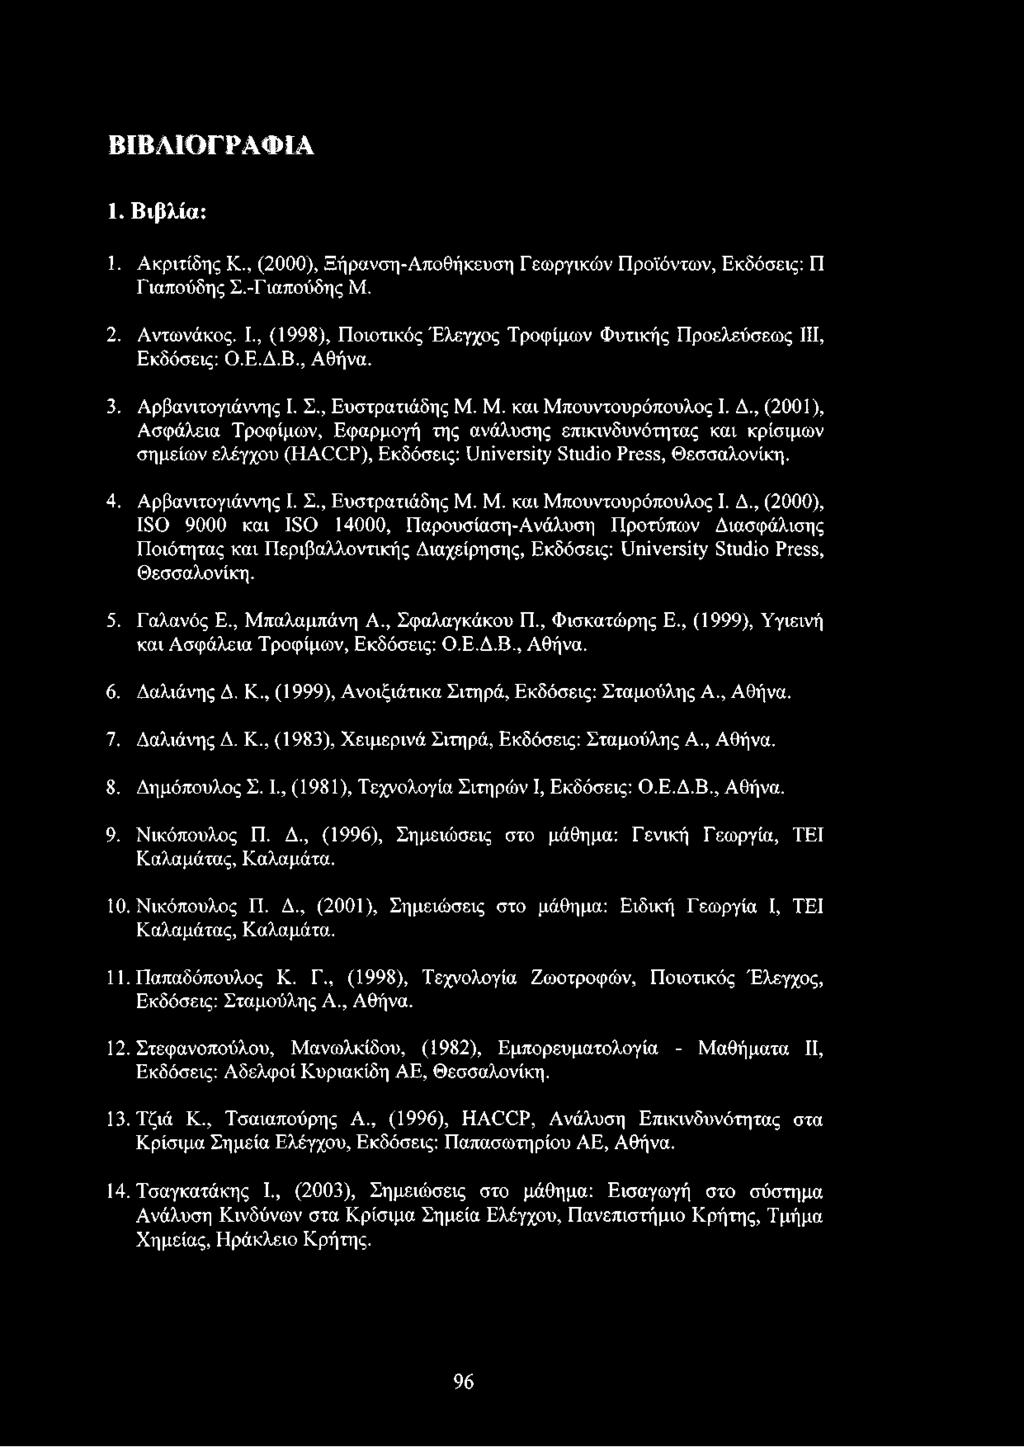 , (2001), Ασφάλεια Τροφίμων, Εφαρμογή της ανάλυσης επικινδυνότητας και κρίσιμων σημείων ελέγχου (HACCP), Εκδόσεις: University Studio Press, Θεσσαλονίκη. 4. Αρβανιτογιάννης I. Σ., Ευστρατιάδης Μ.